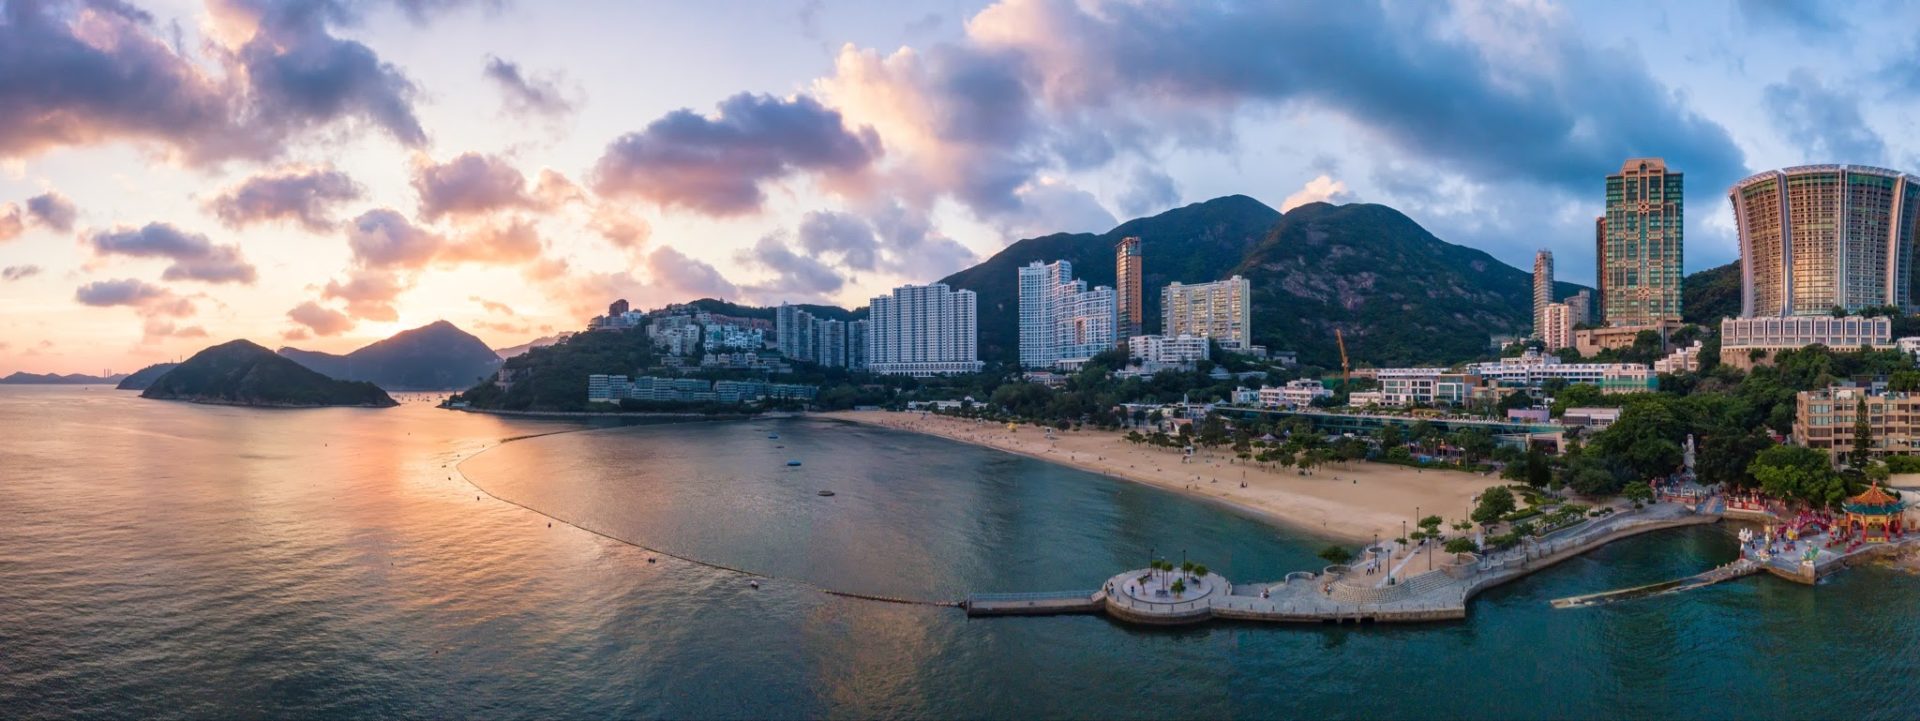 淺水灣泳灘被譽為香港最美麗的沙灘。